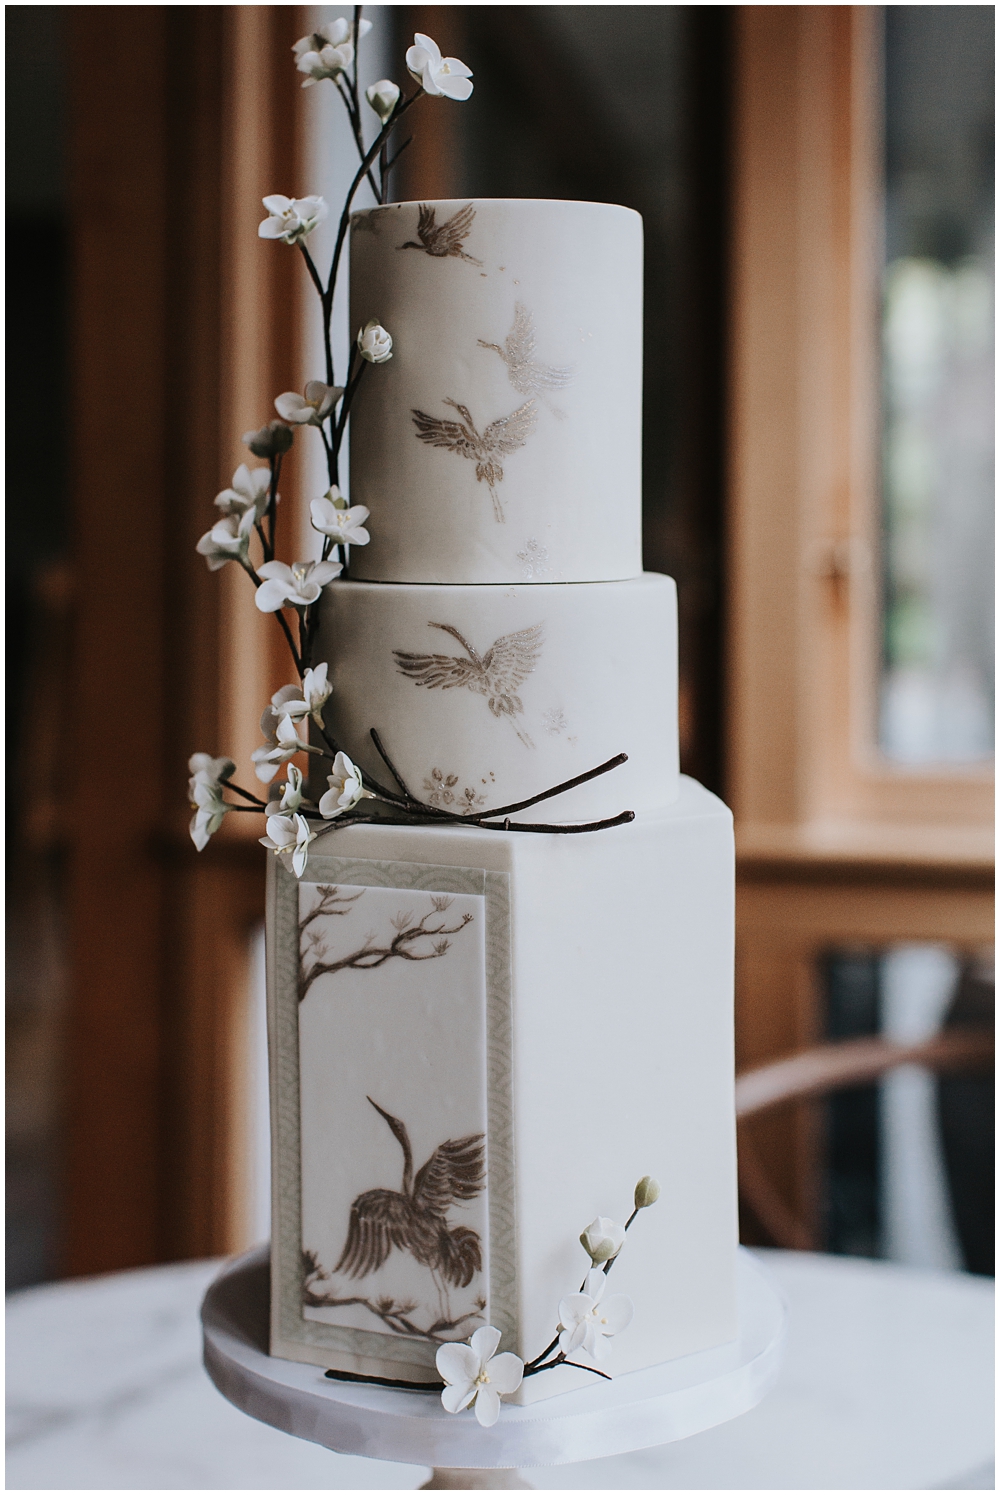 Japanese Wedding Cake with Crane 